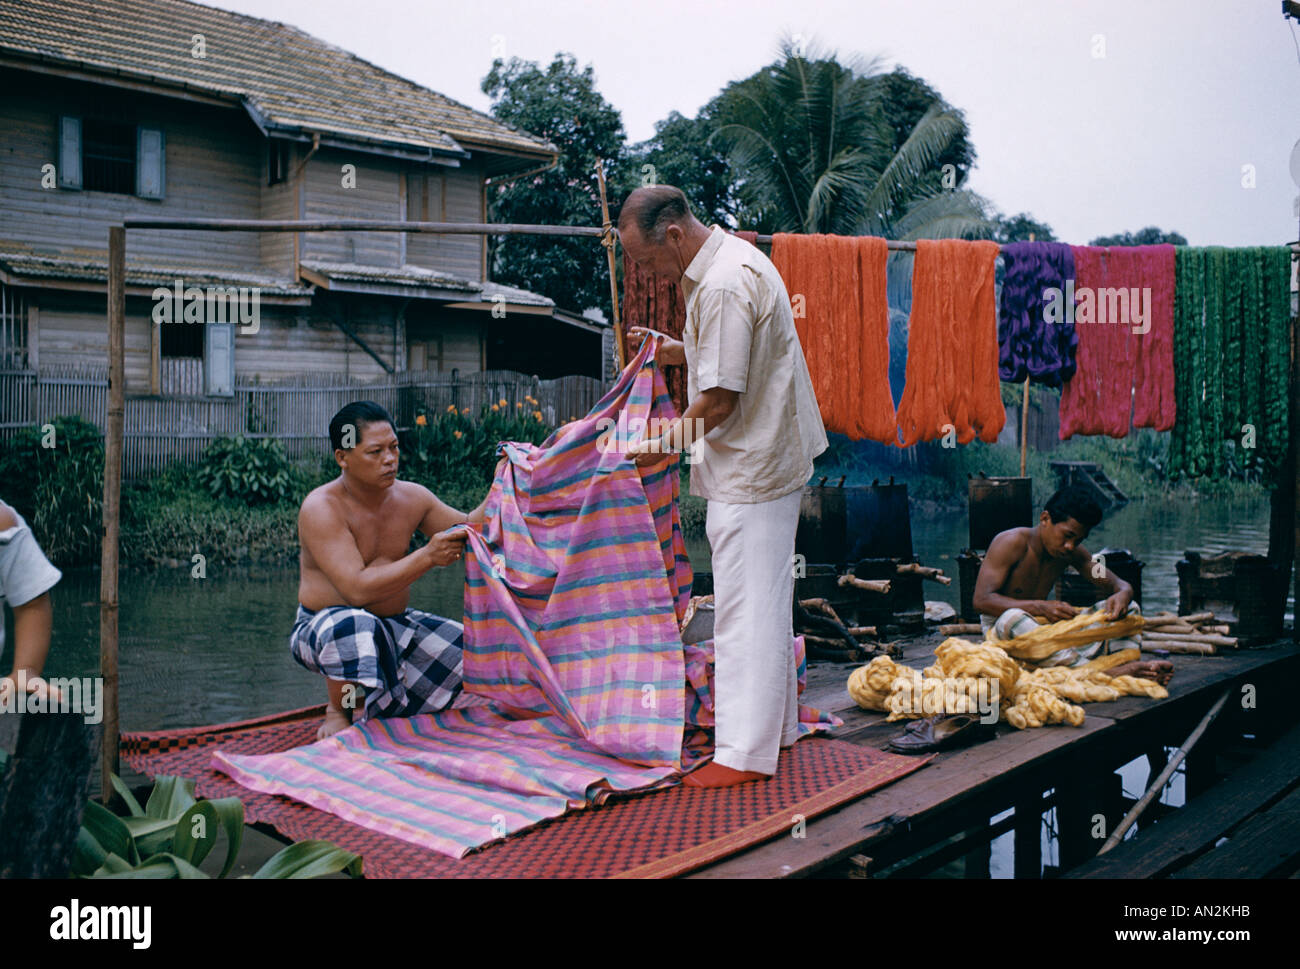 La soie thaïlandaise / Jim Thompson Soie Inspection , Bangkok, Thaïlande Banque D'Images